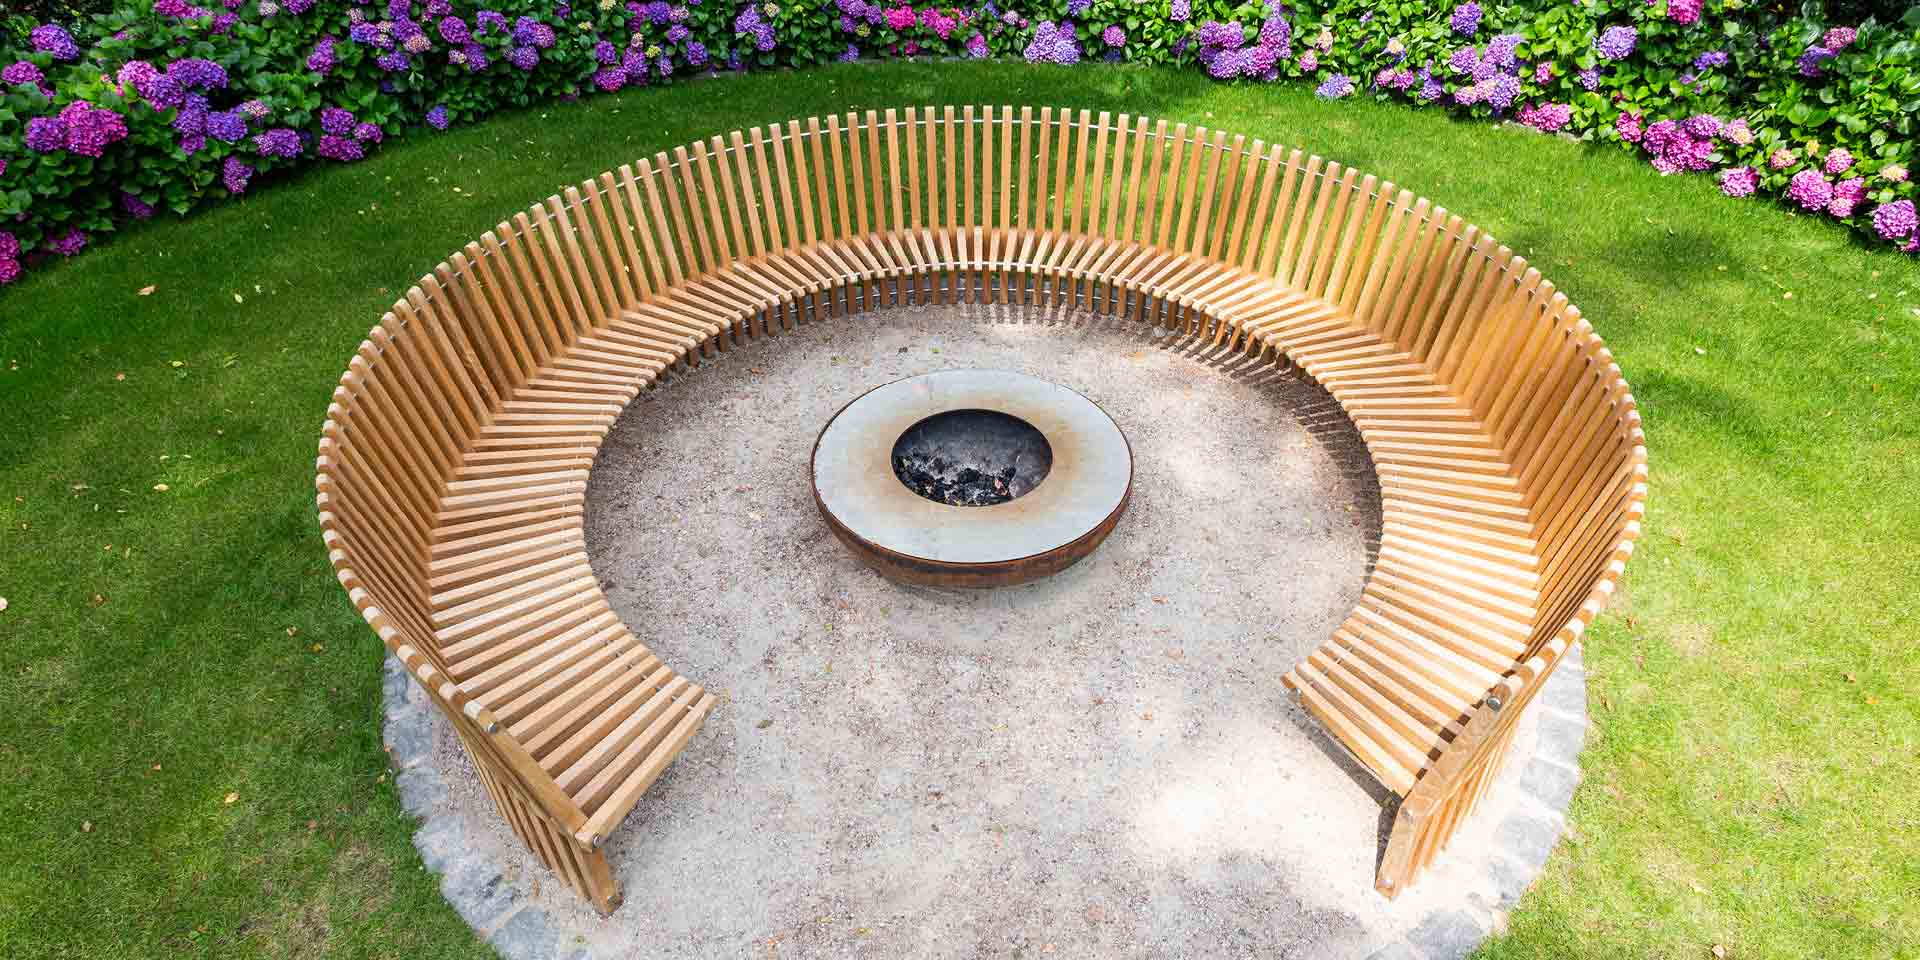 Perfekte & qualitativ hochwertige Möbel aus Holz für Ihren Garten, Balkon oder Ihre Terrasse  von der Möbeltischlerei woodendesign aus Hamburg